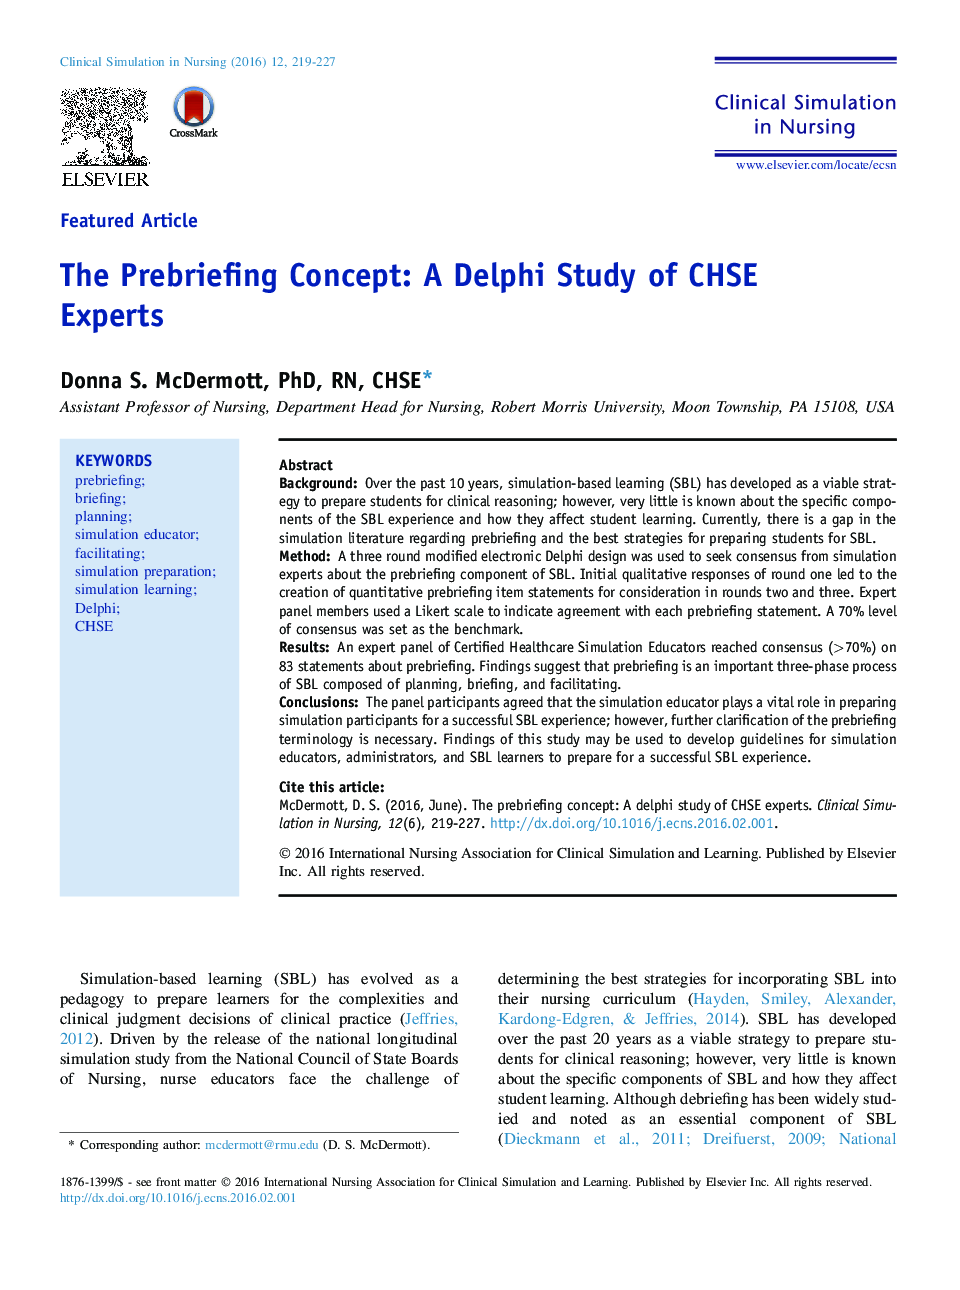 مفهوم قبل از خلاصه سازی: مطالعه دلفی از کارشناسان CHSE